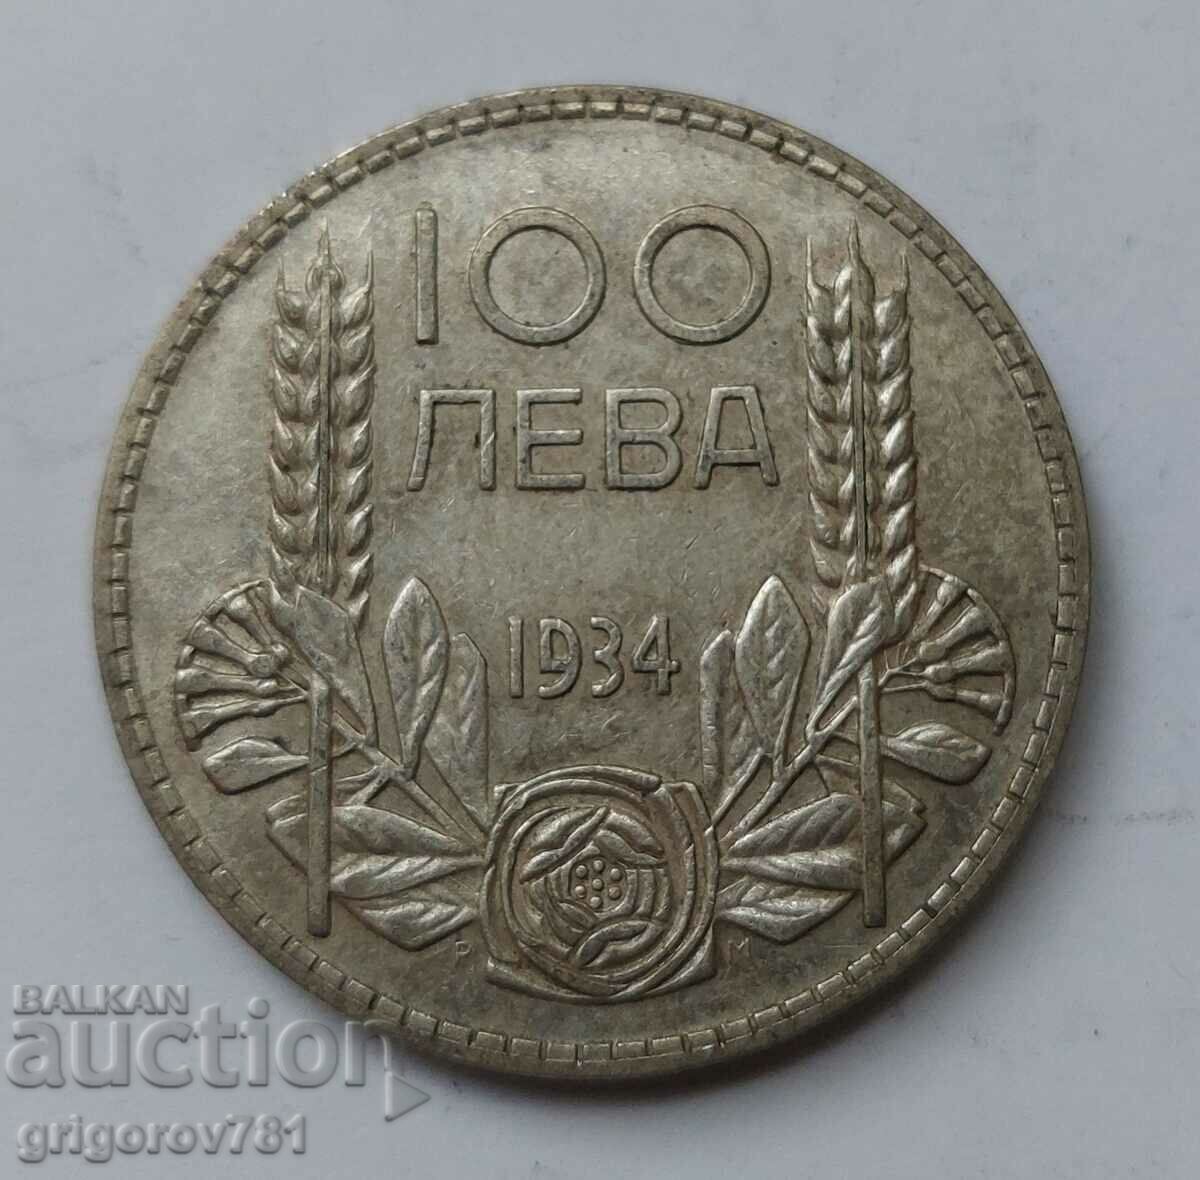 100 leva argint Bulgaria 1934 - monedă de argint #27